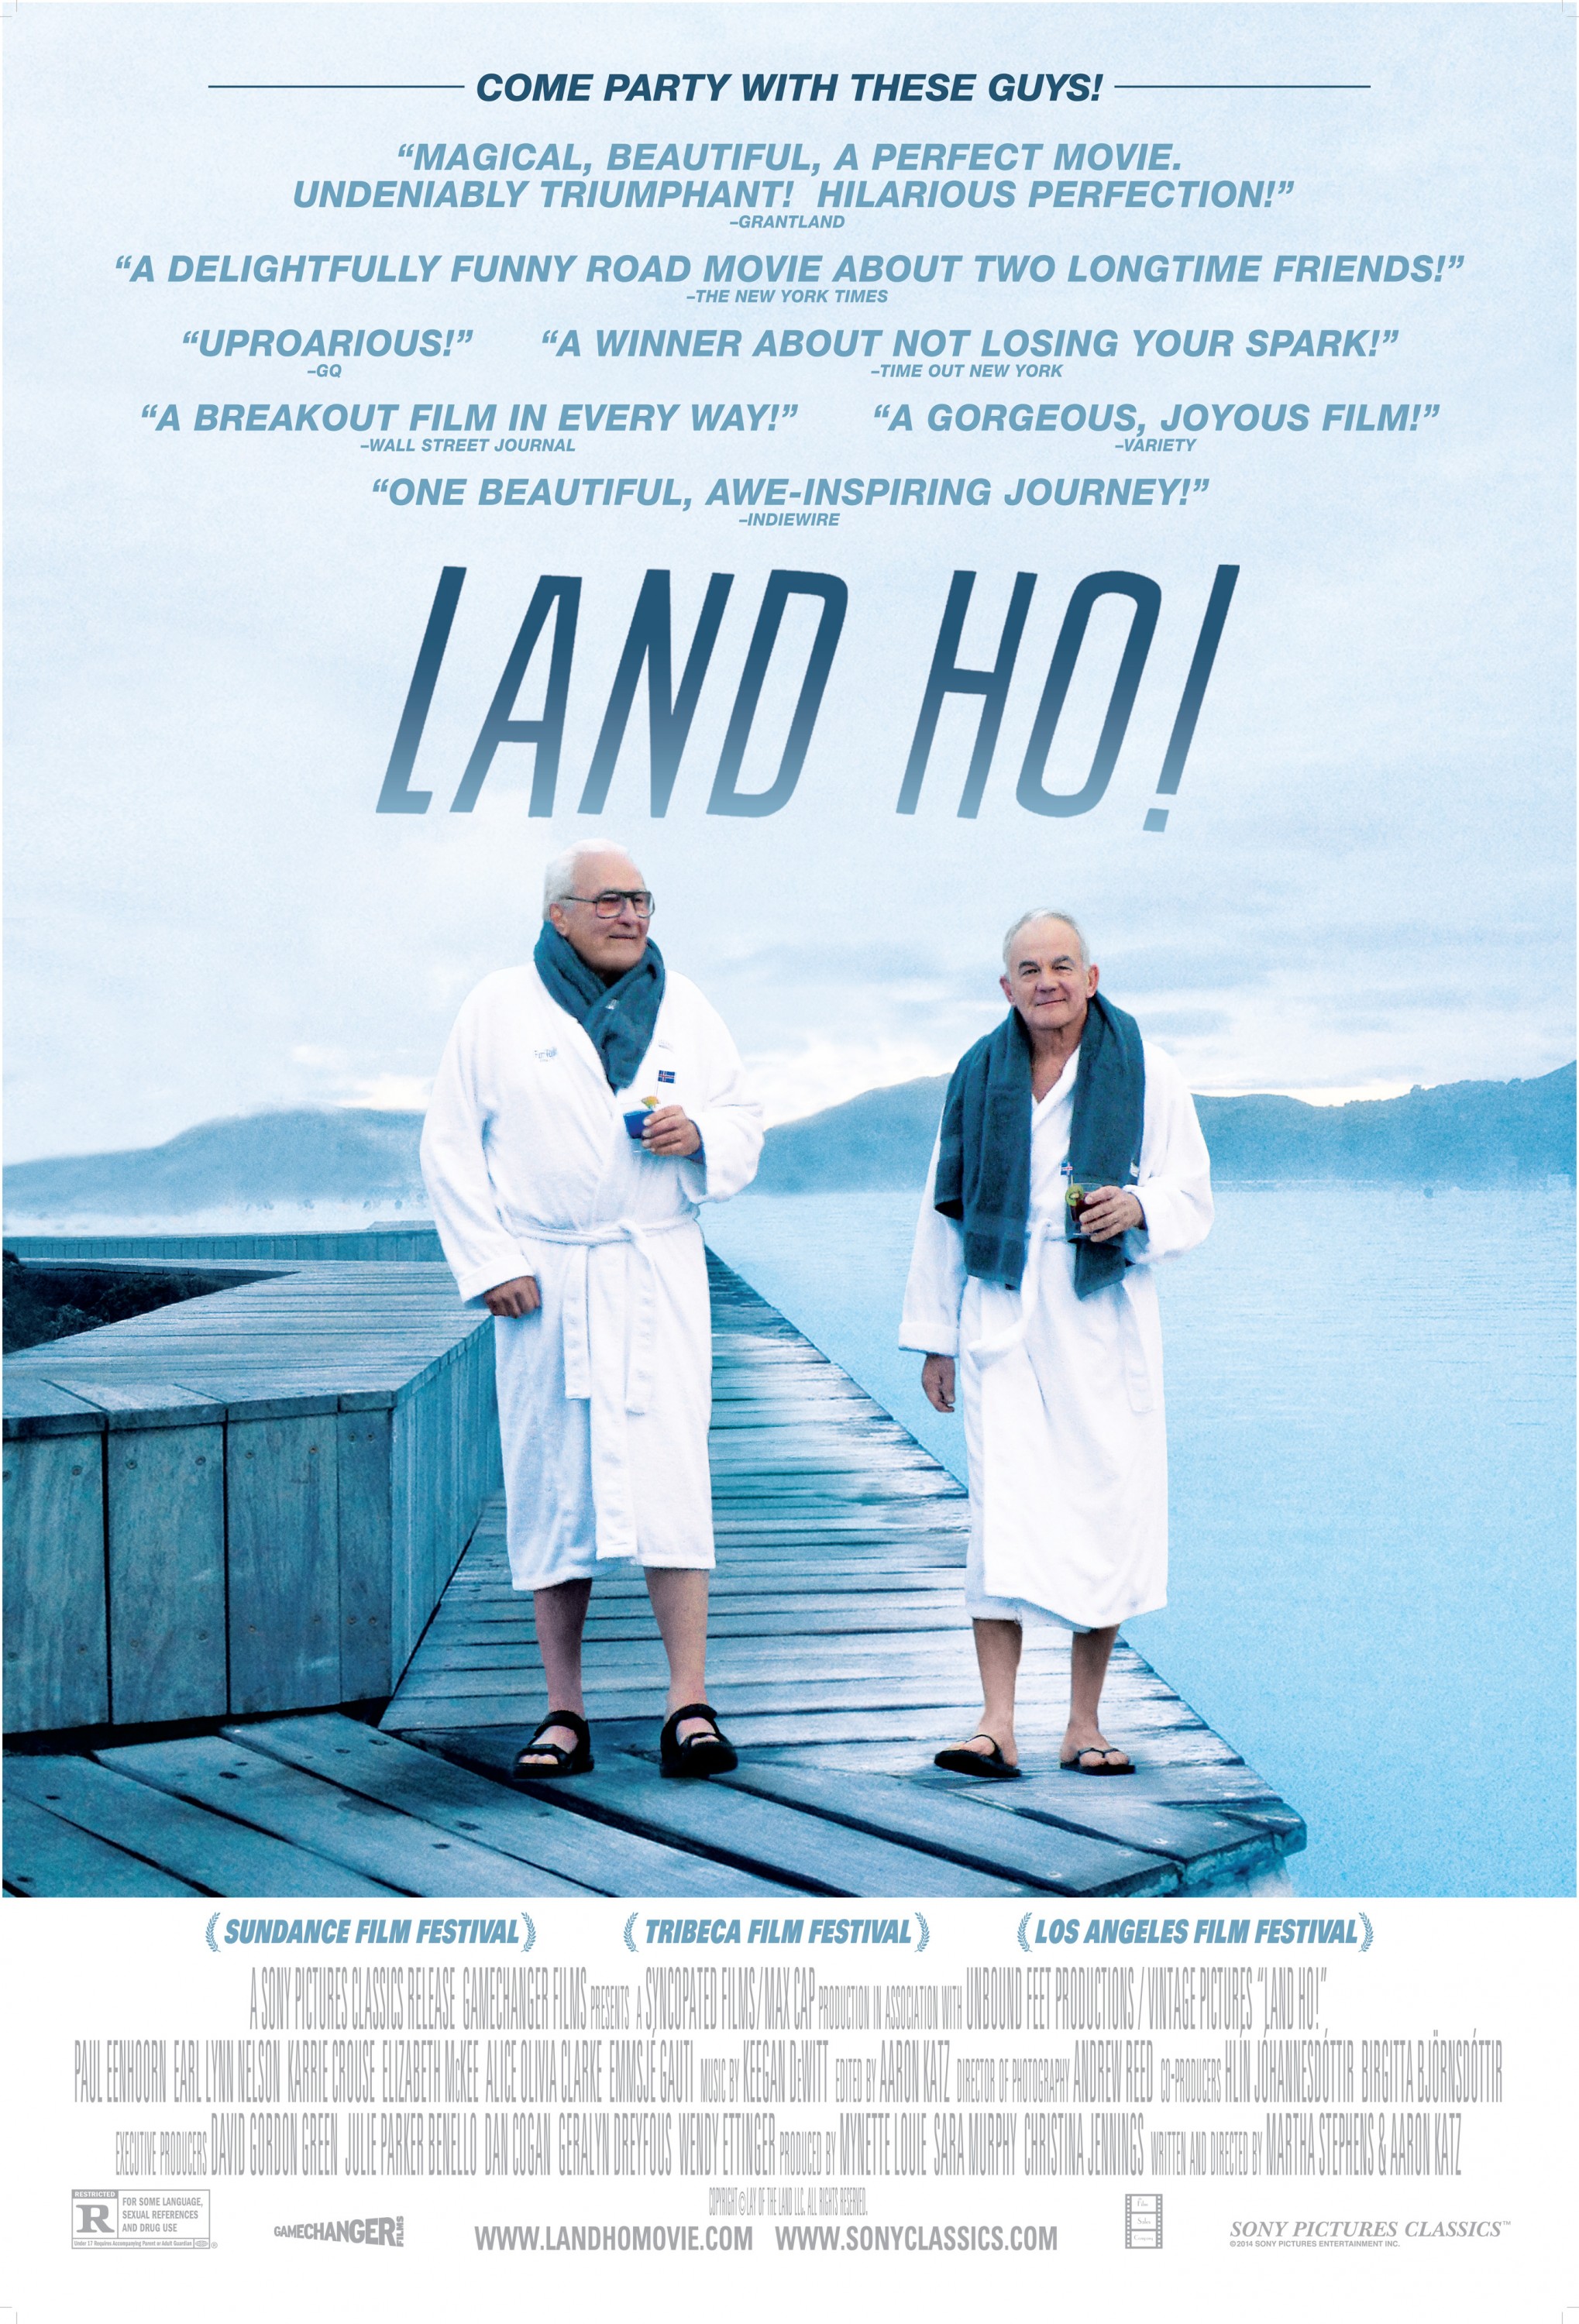 Land Ho Film Poster 8.27.14.jpg